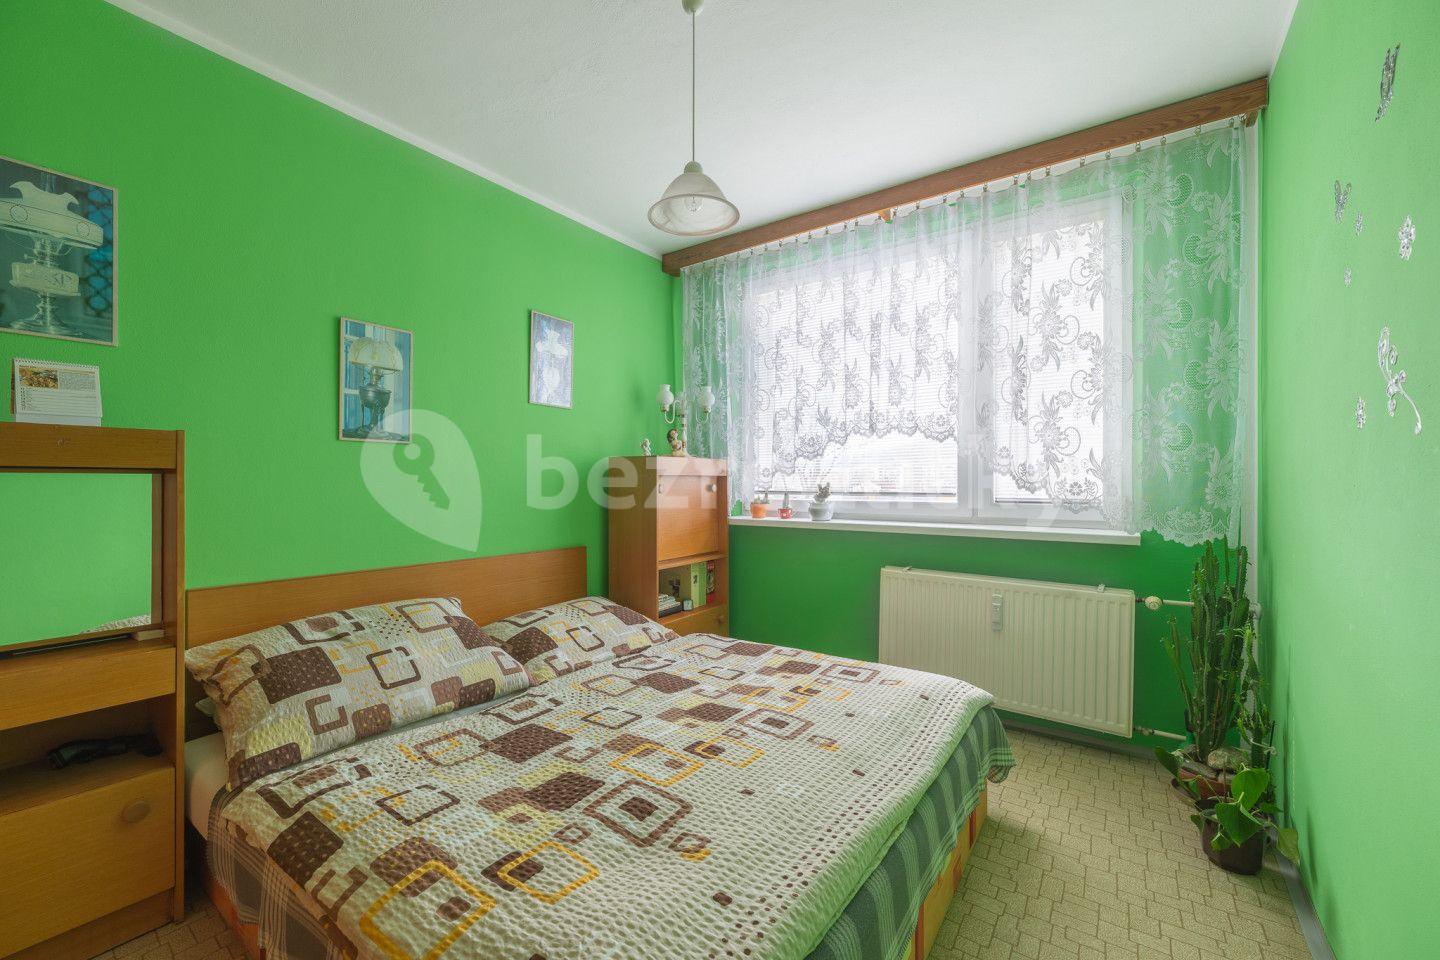 3 bedroom flat for sale, 63 m², Družstevní, Luhačovice, Zlínský Region